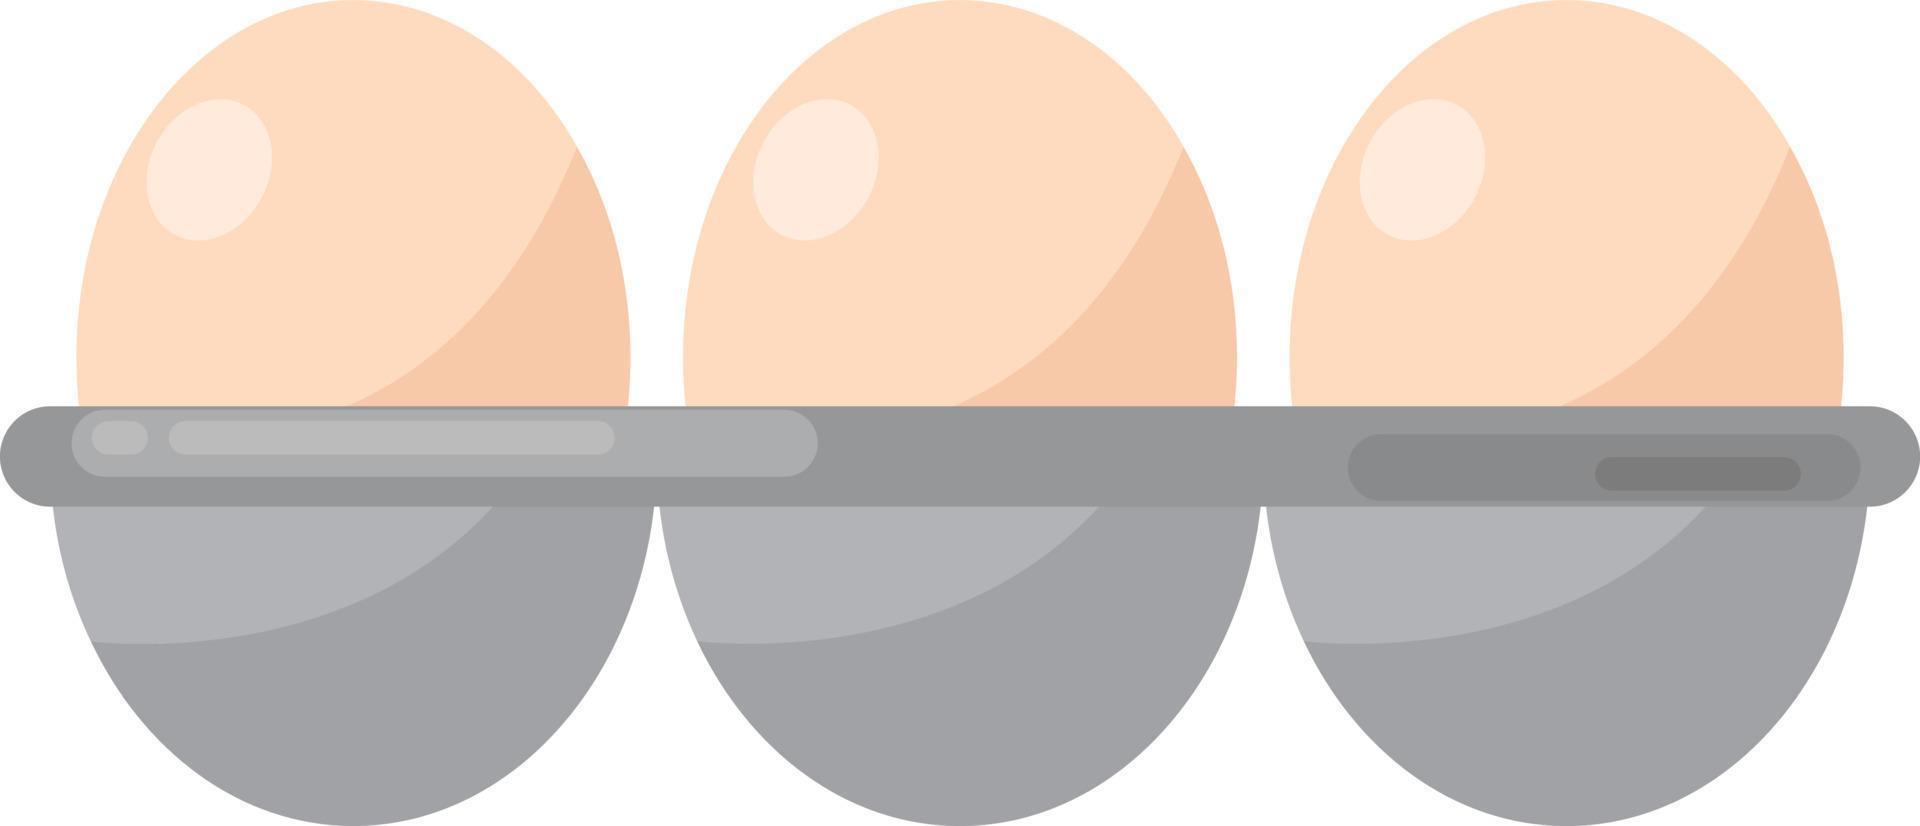 ovos em caixa, ilustração, vetor em fundo branco